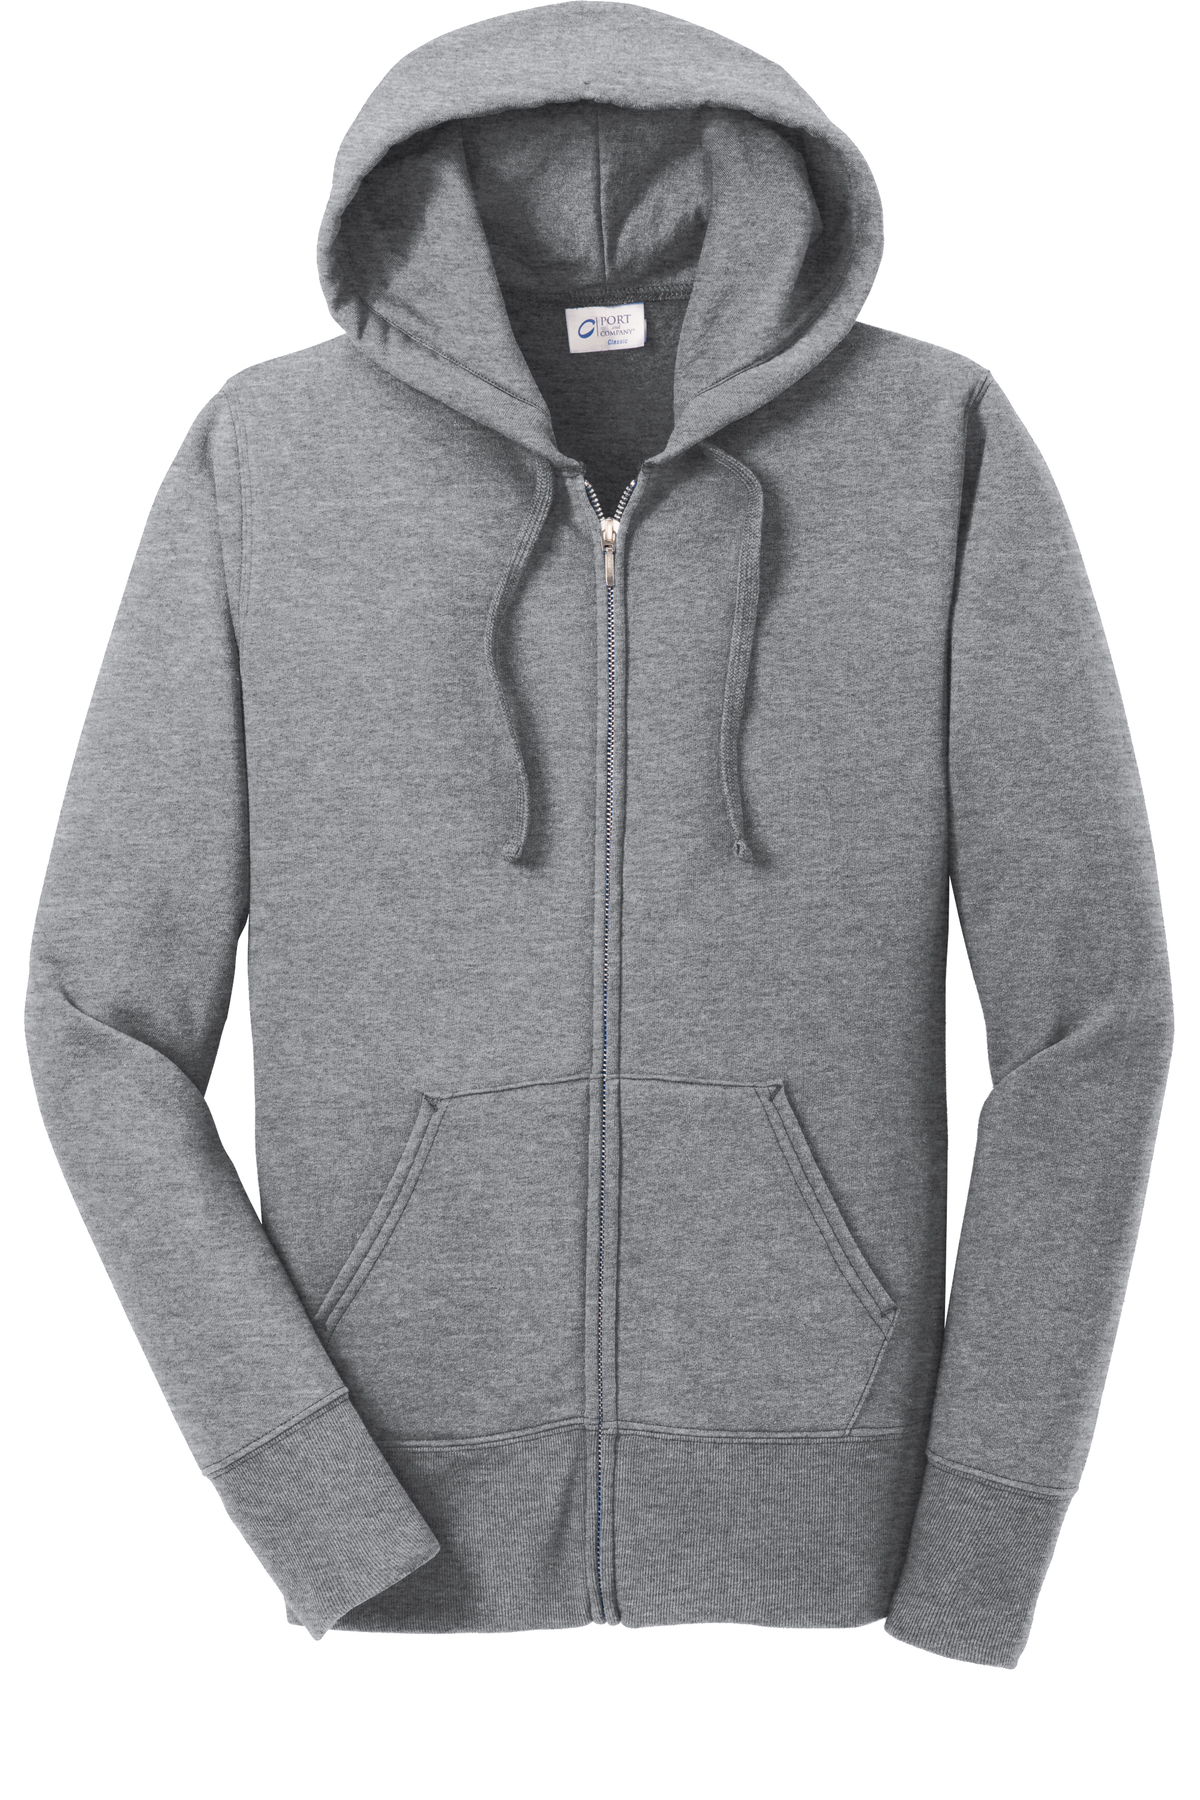 Ladies Core Fleece Full-Zip Hooded Sweatshirt - Cmonserrat